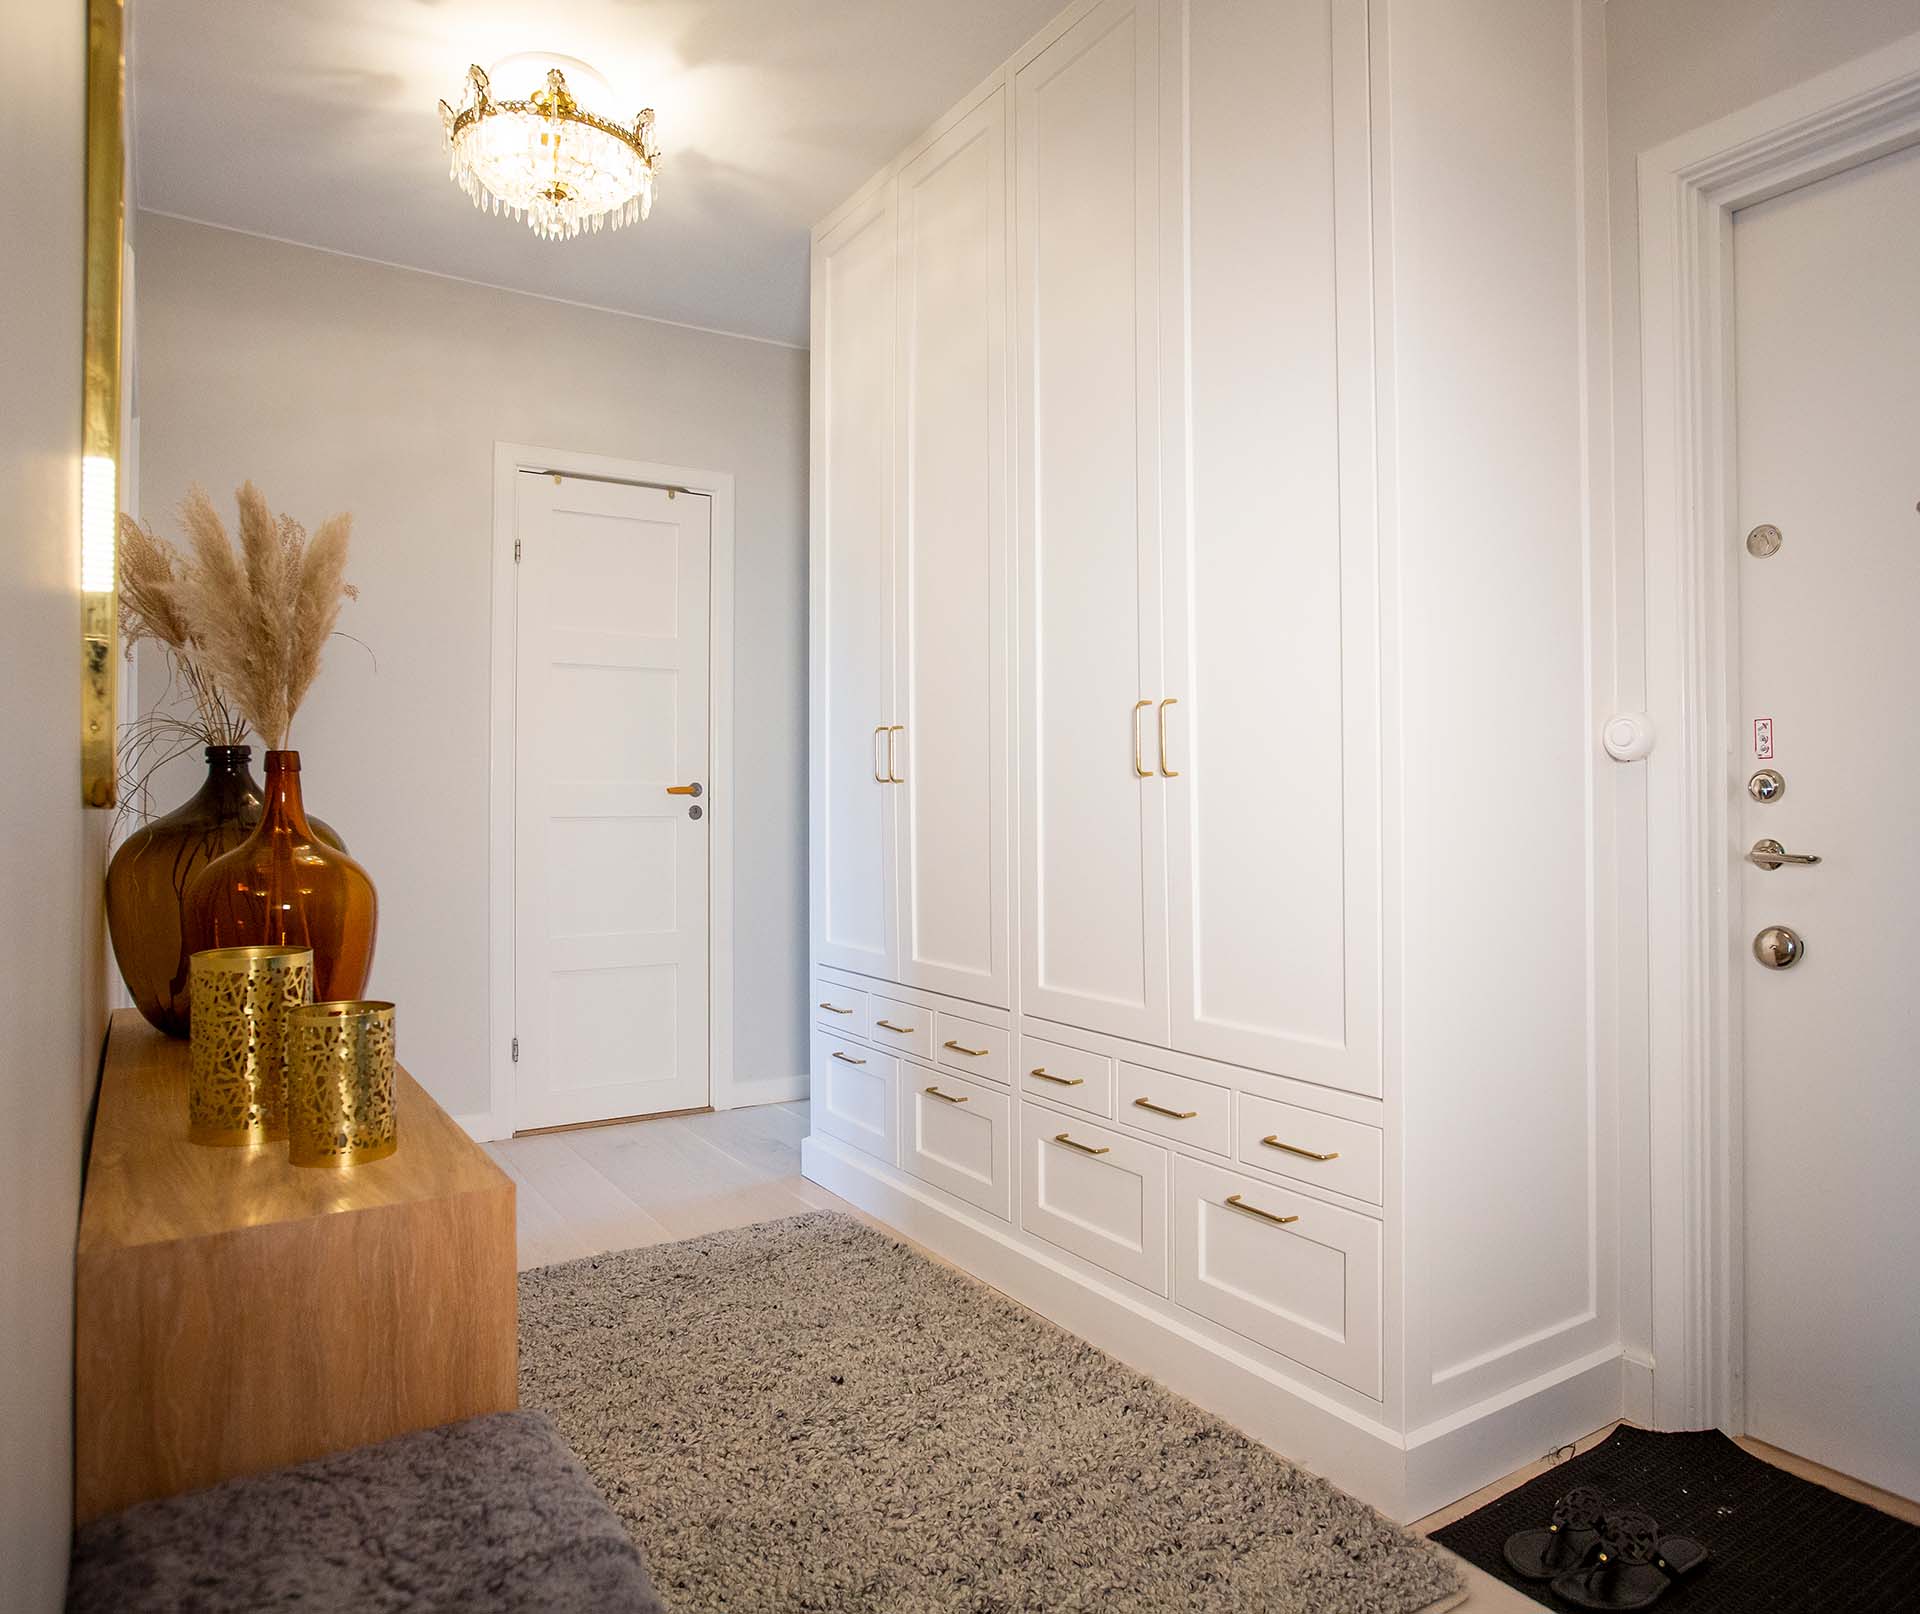 Platsbyggd hall garderob platsbyggd guldhandtag entre lådor vit garderob entre inspiration nyklassisk landshövdinge guldheden hallinspiration